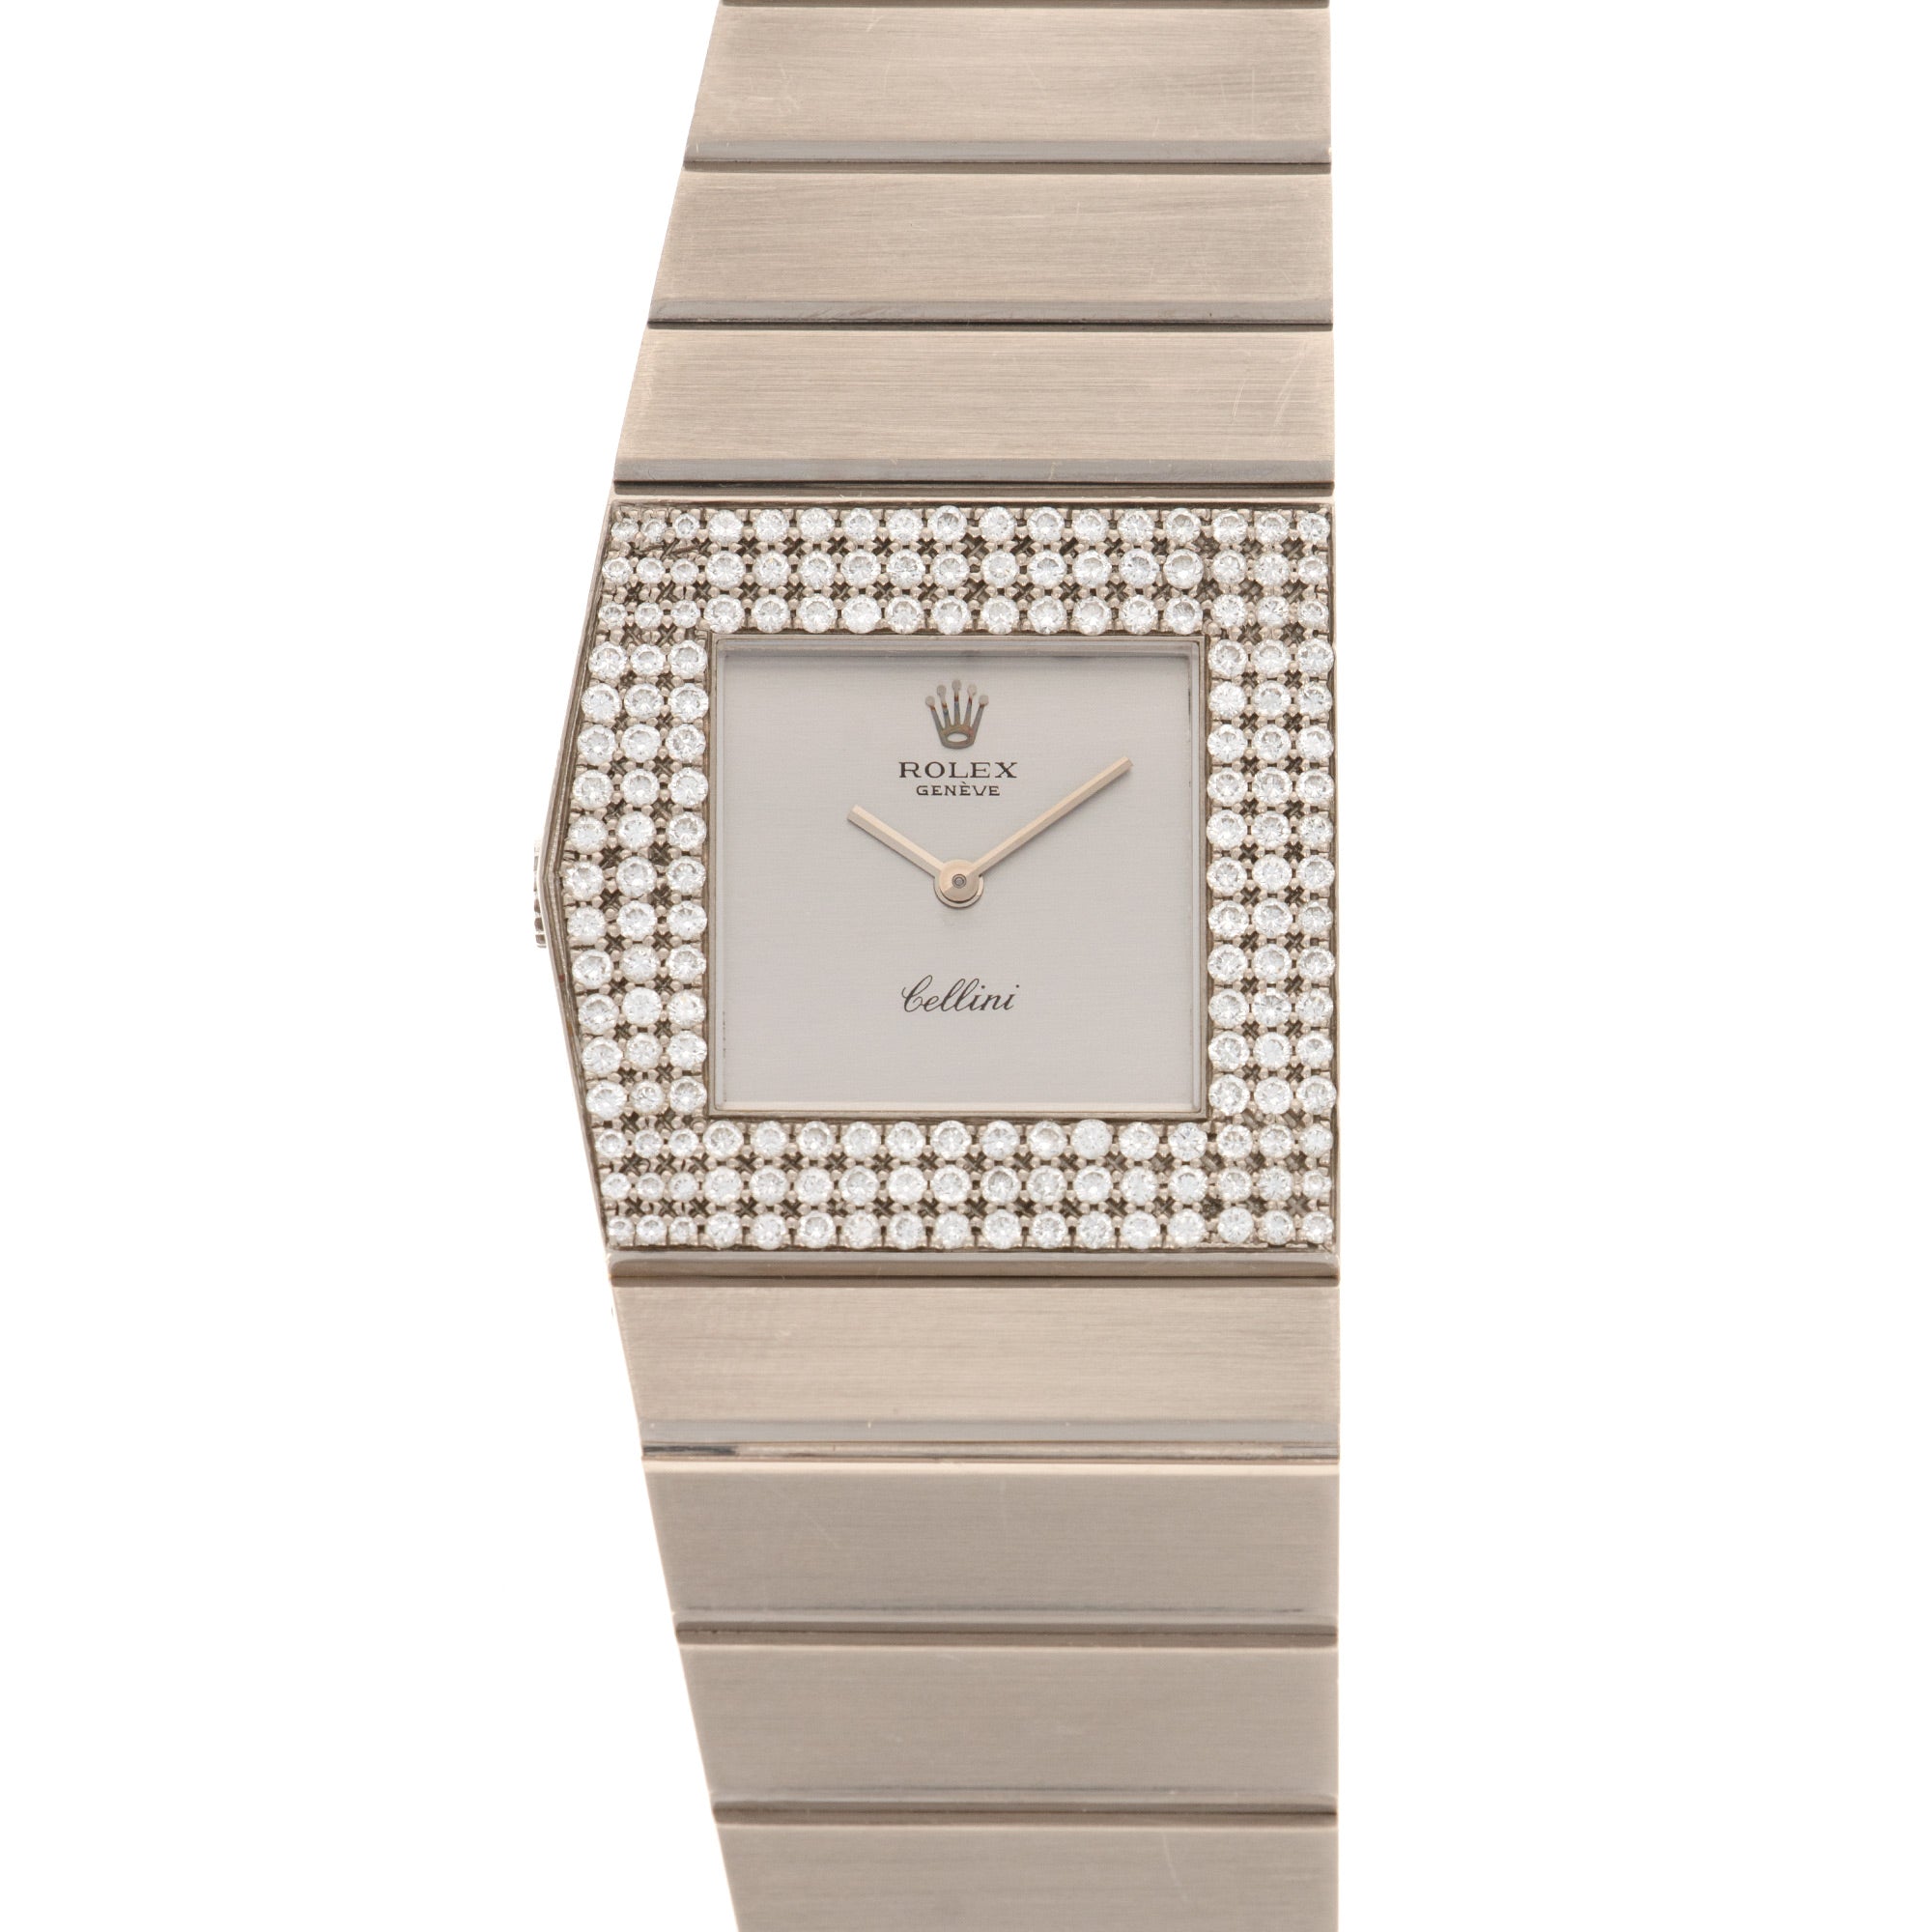 Rolex - Rolex White Gold King Midas Diamond Watch Ref. 4609 - The Keystone Watches